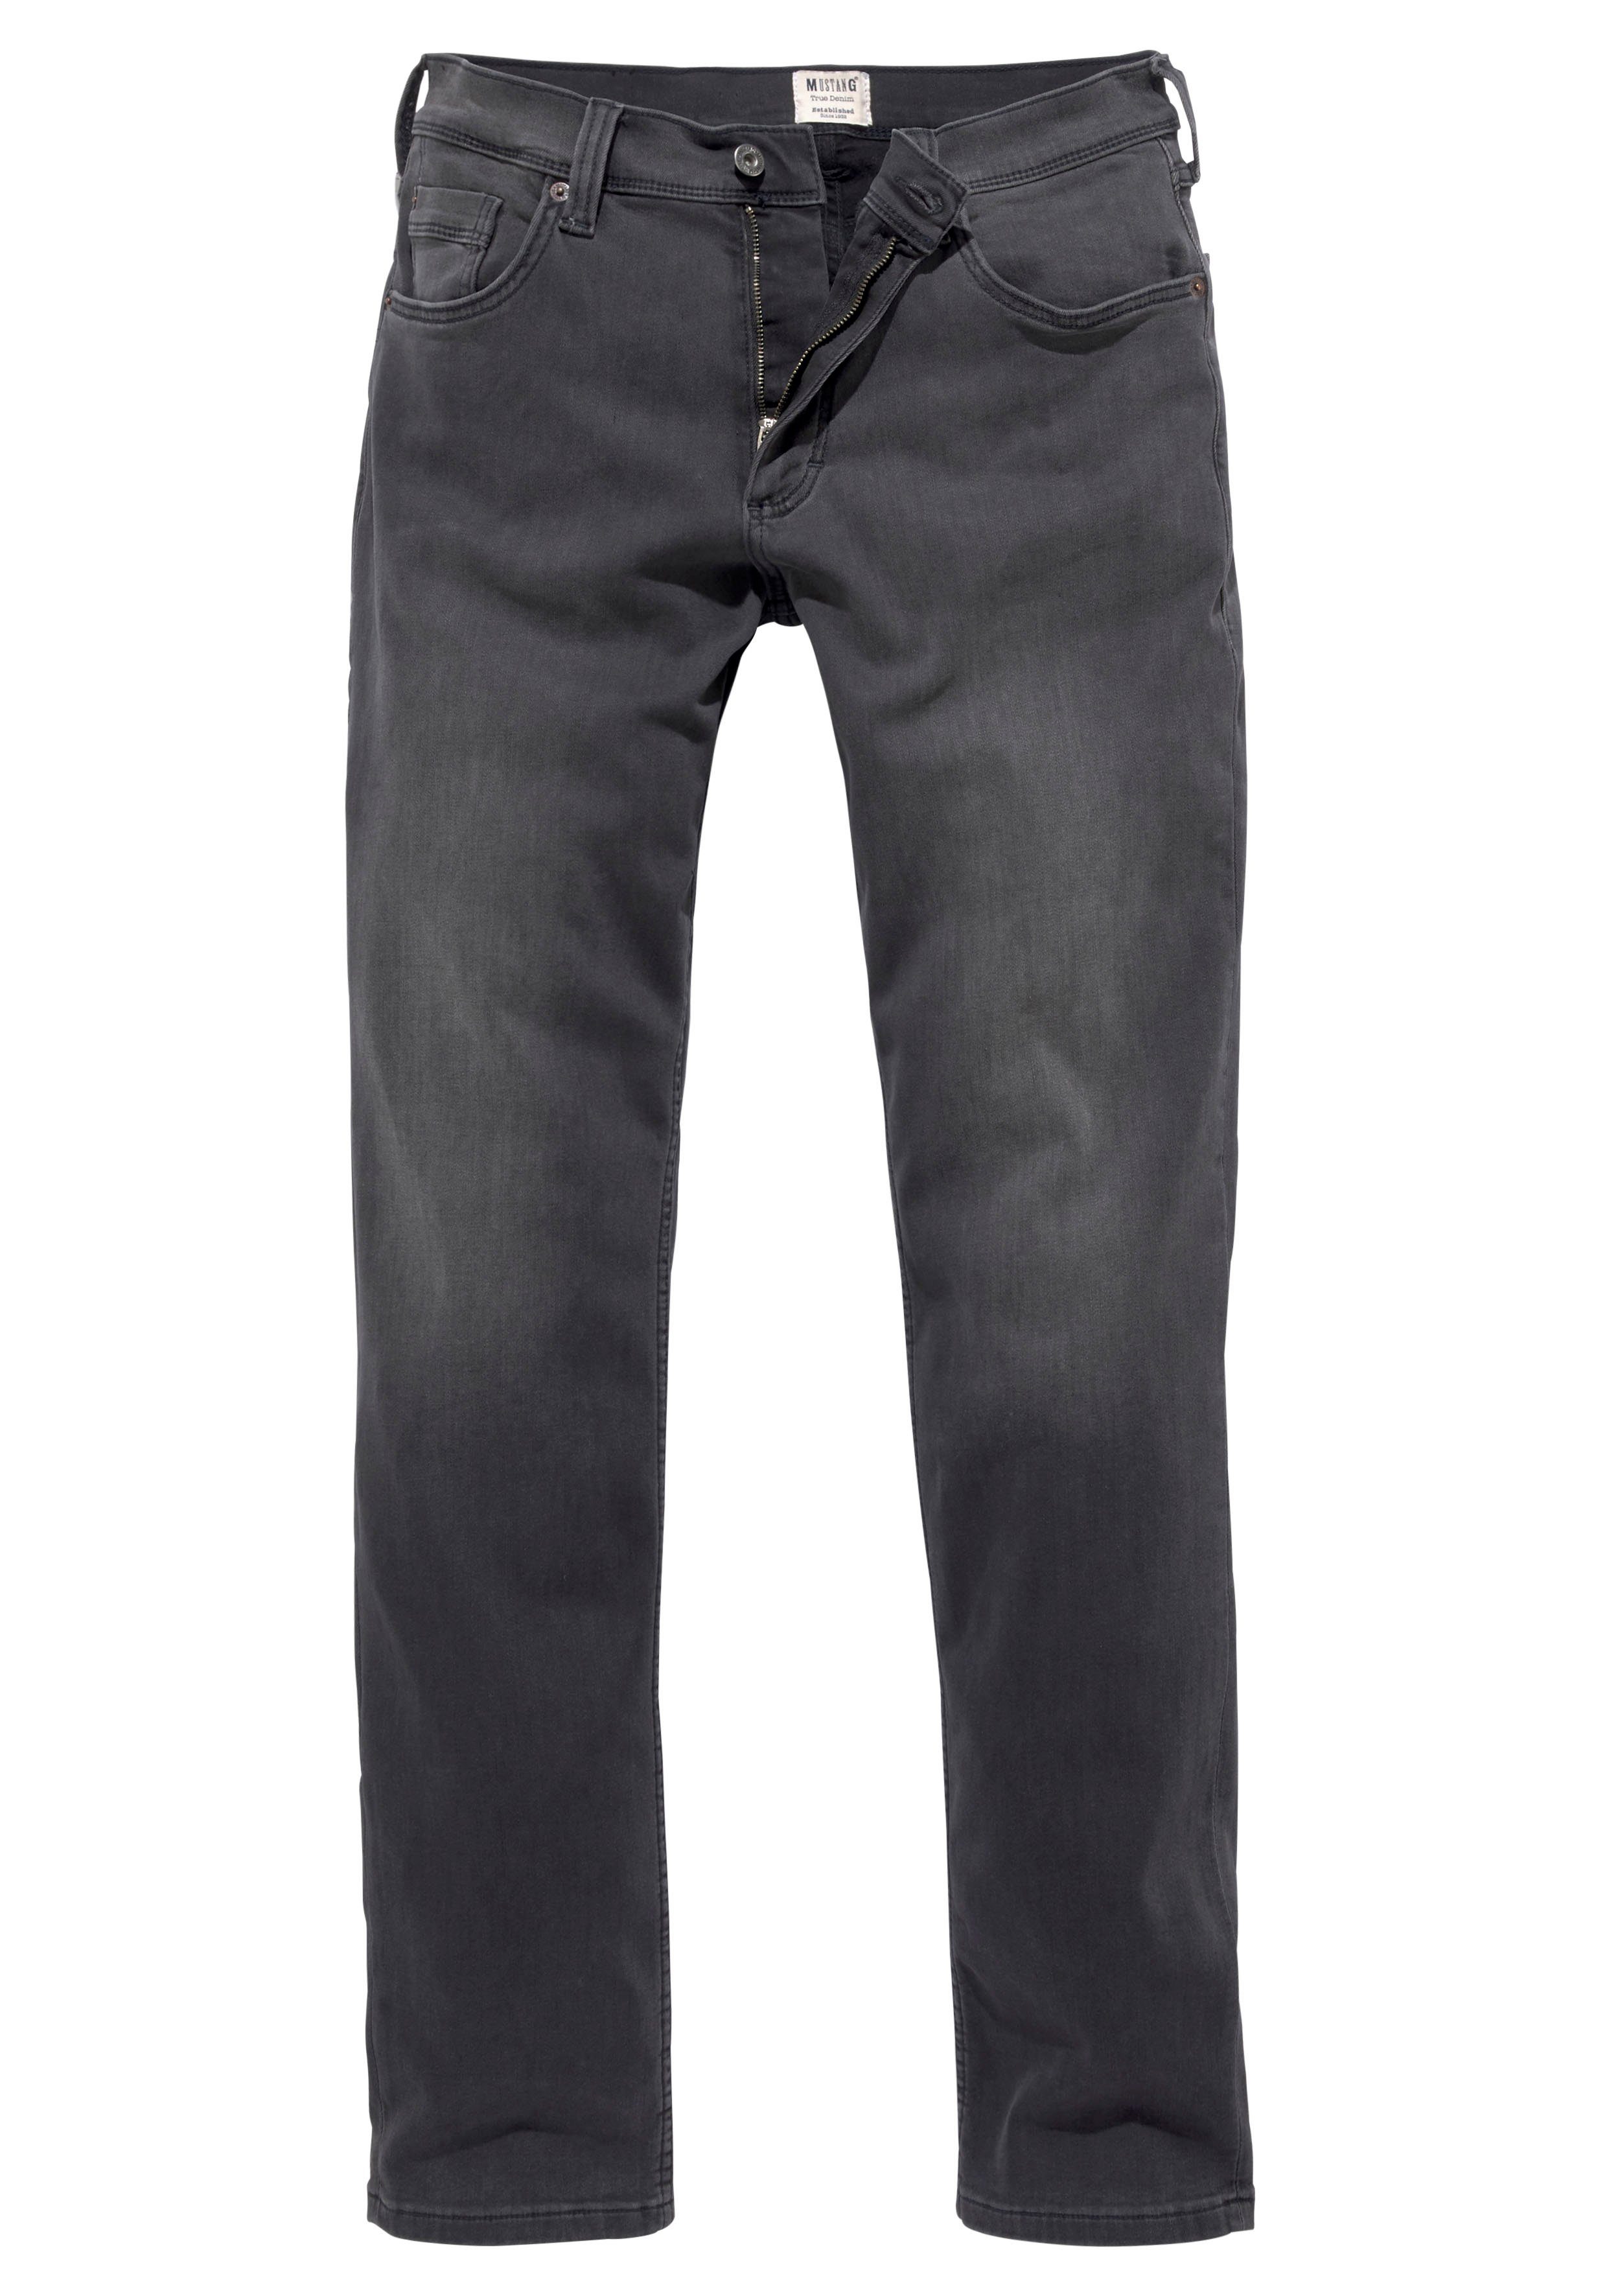 Washington medium-dark mit 5-Pocket-Jeans Abriebeffekten leichten MUSTANG Style Straight